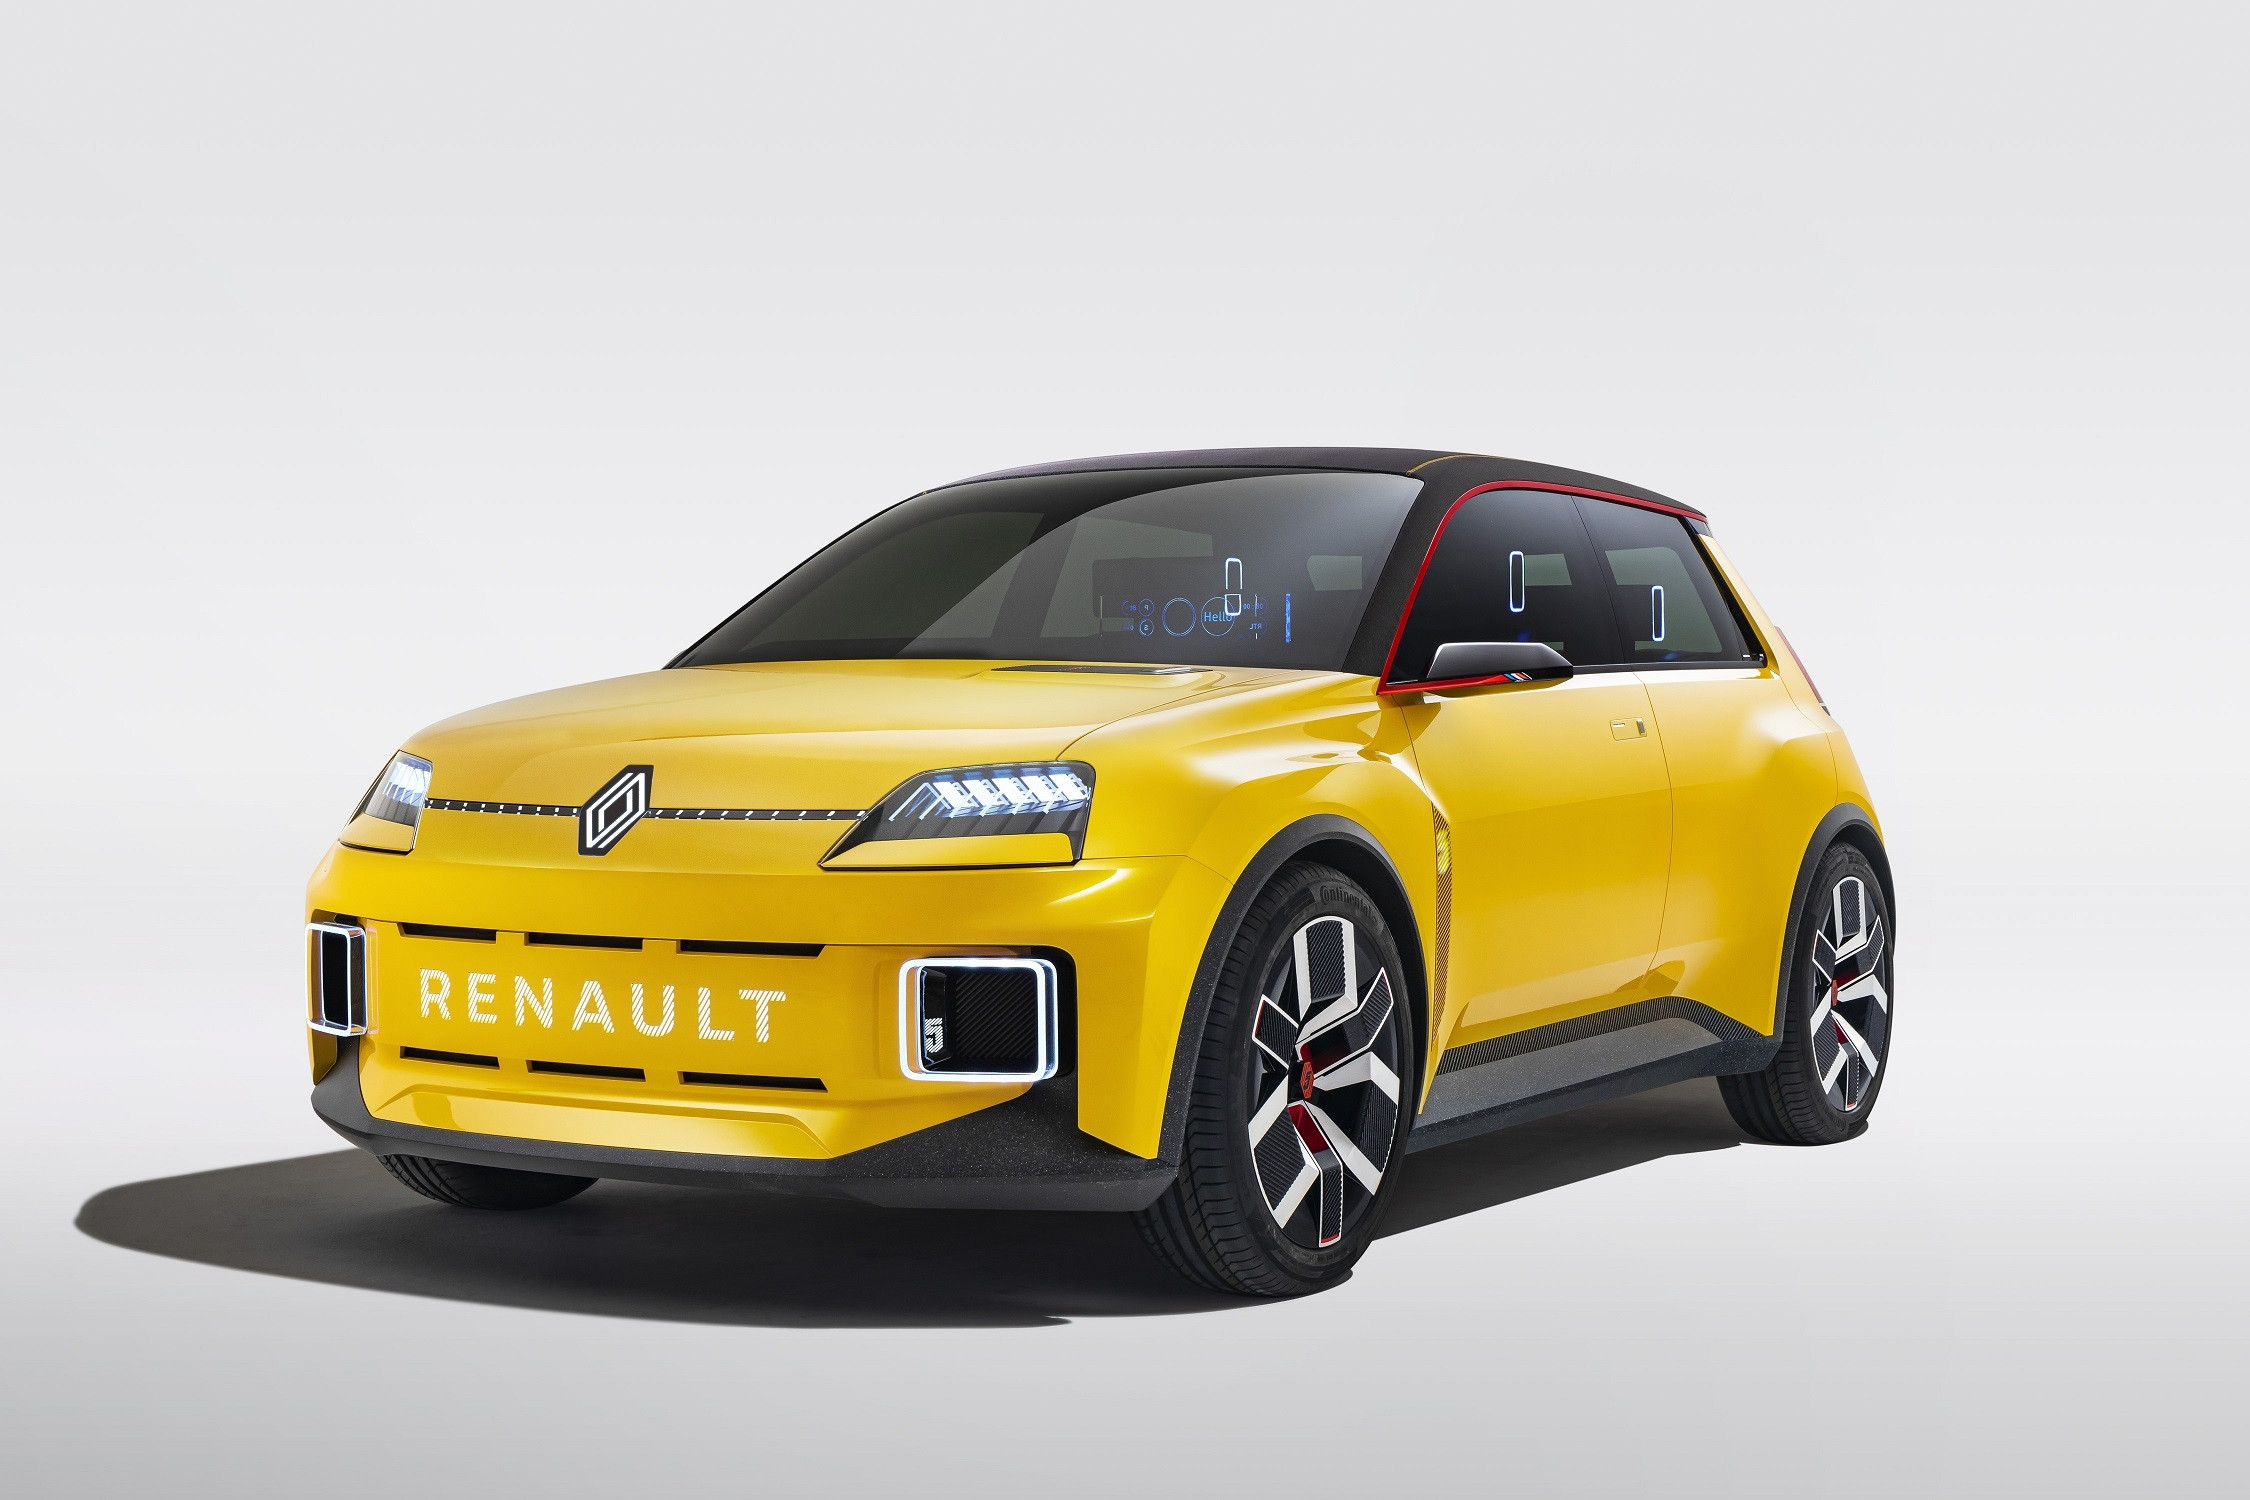 Renault 5 electrique